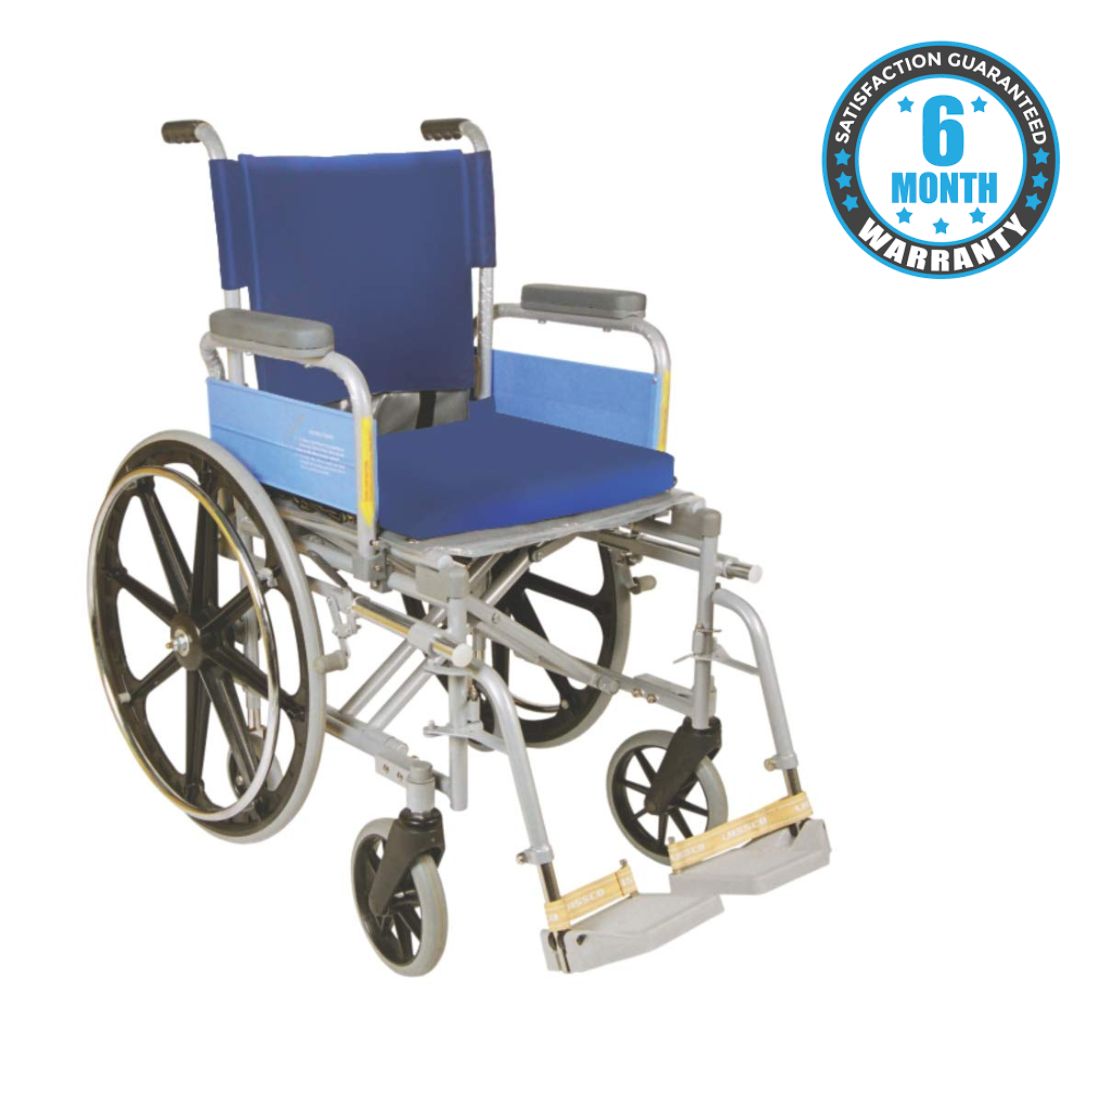 wheelchair for best price in chennai 